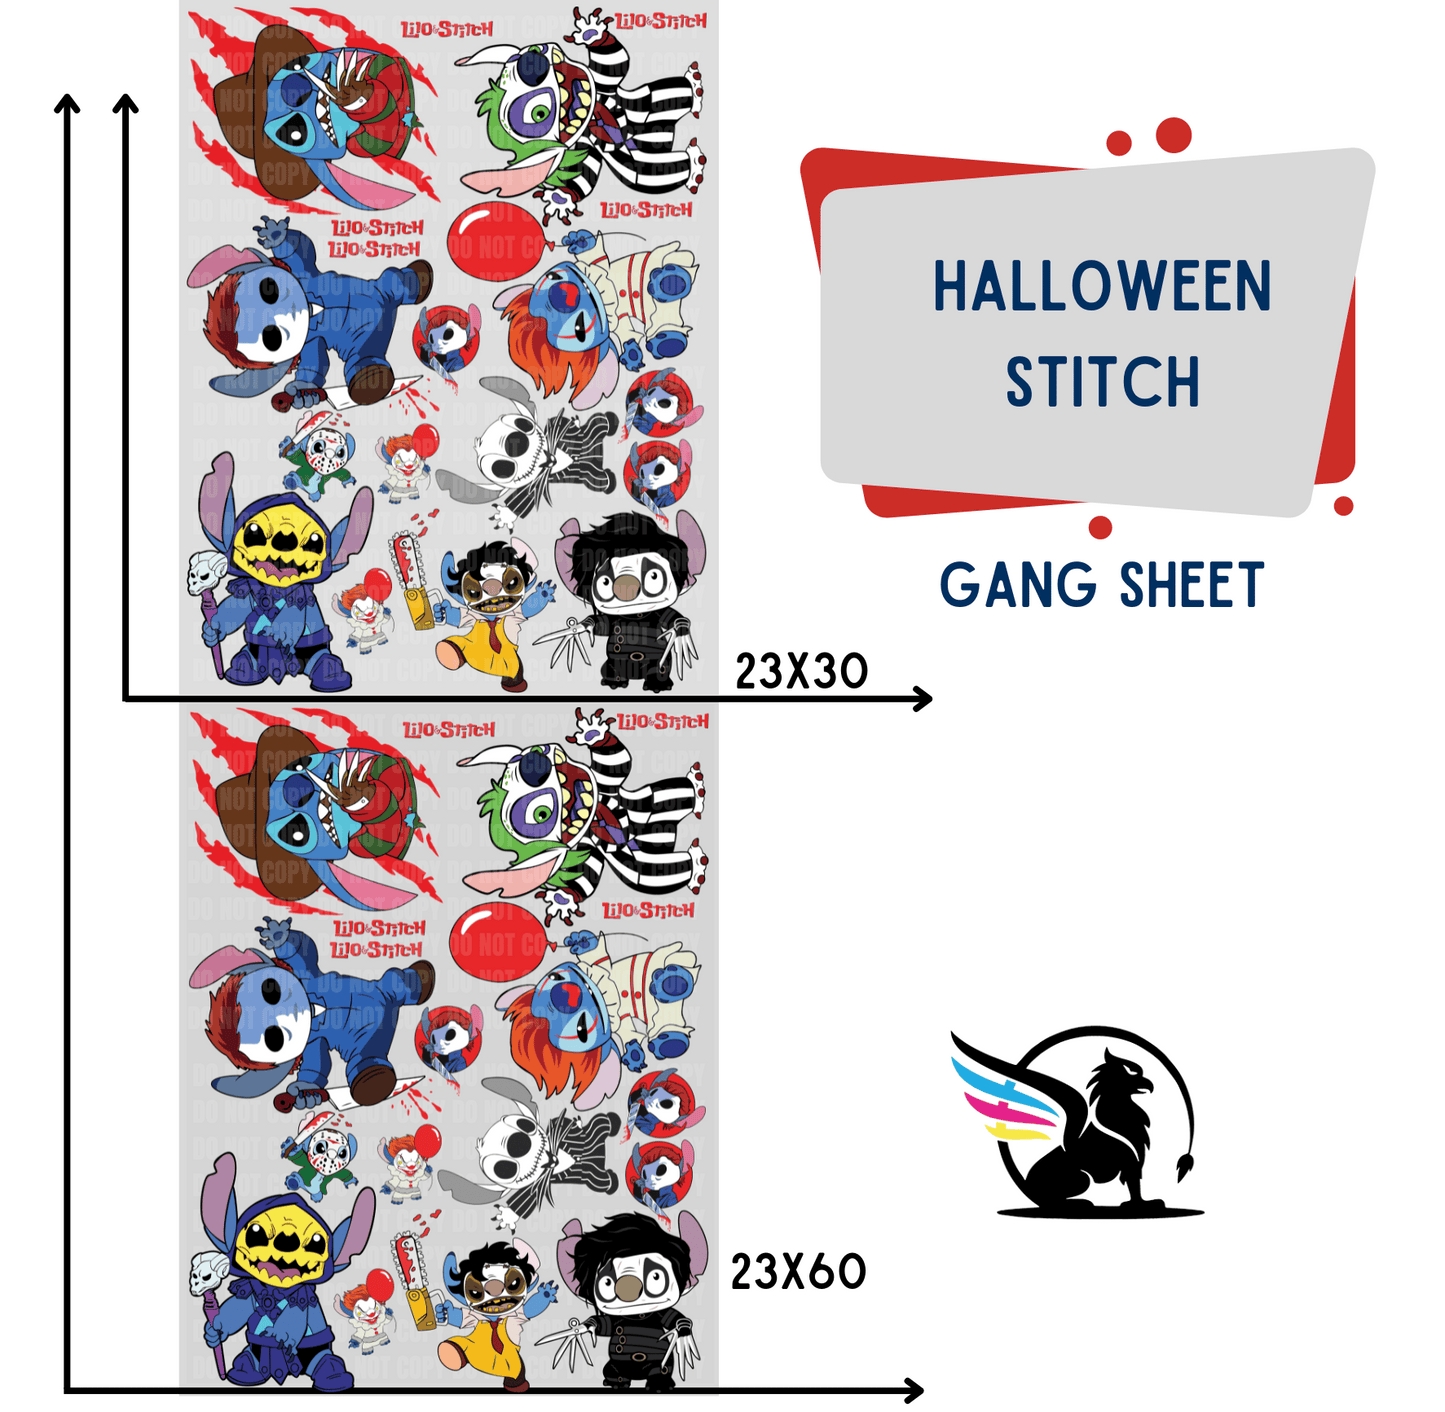 Premade Gang Sheet | Halloween Stitch